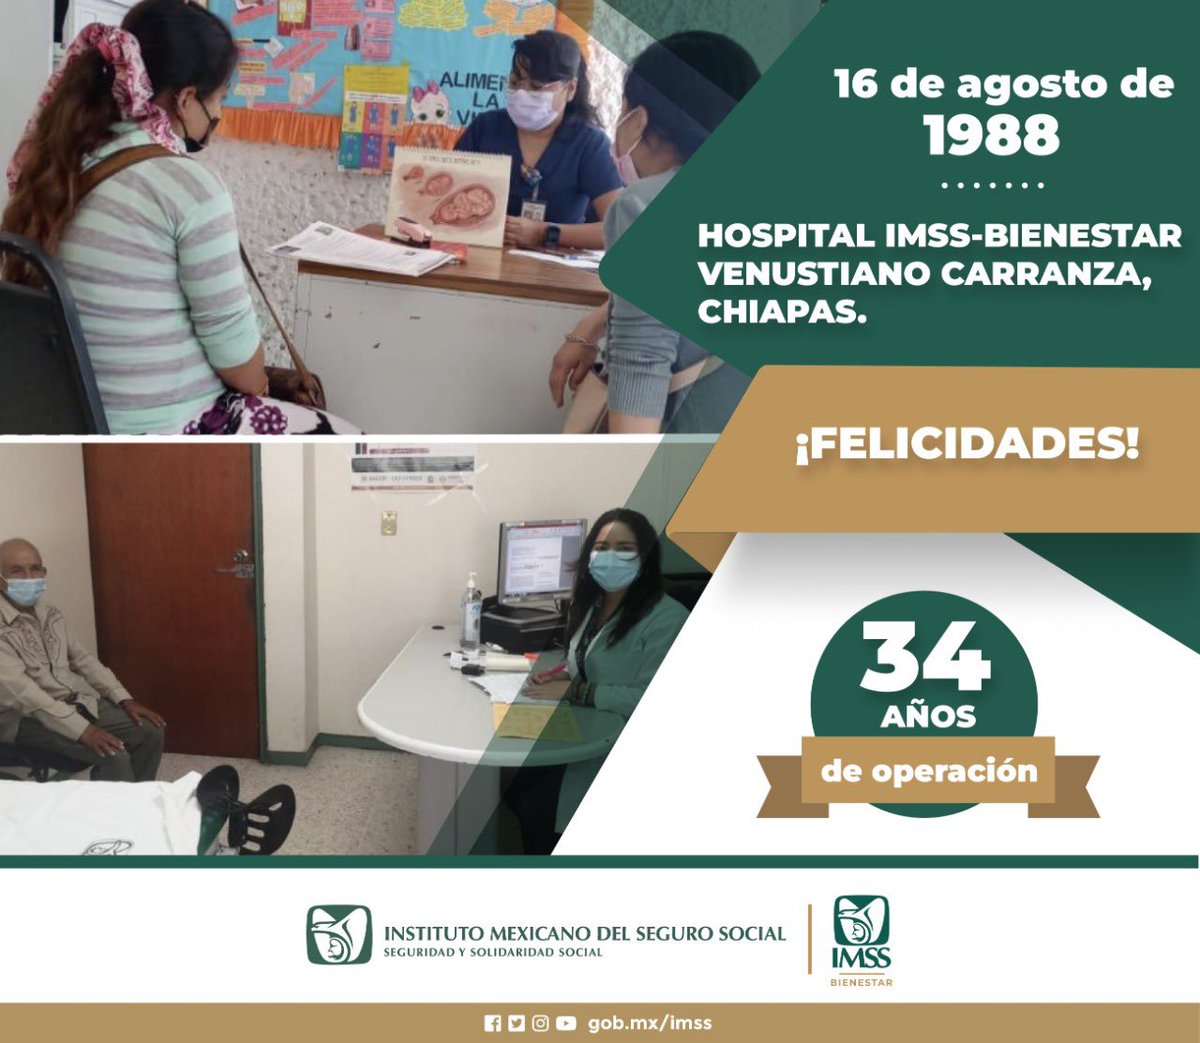 El 16 de agosto de 1988 inició operaciones el Hospital #IMSSBIENESTAR Venustiano Carranza en Chiapas. ¡Muchas felicidades!